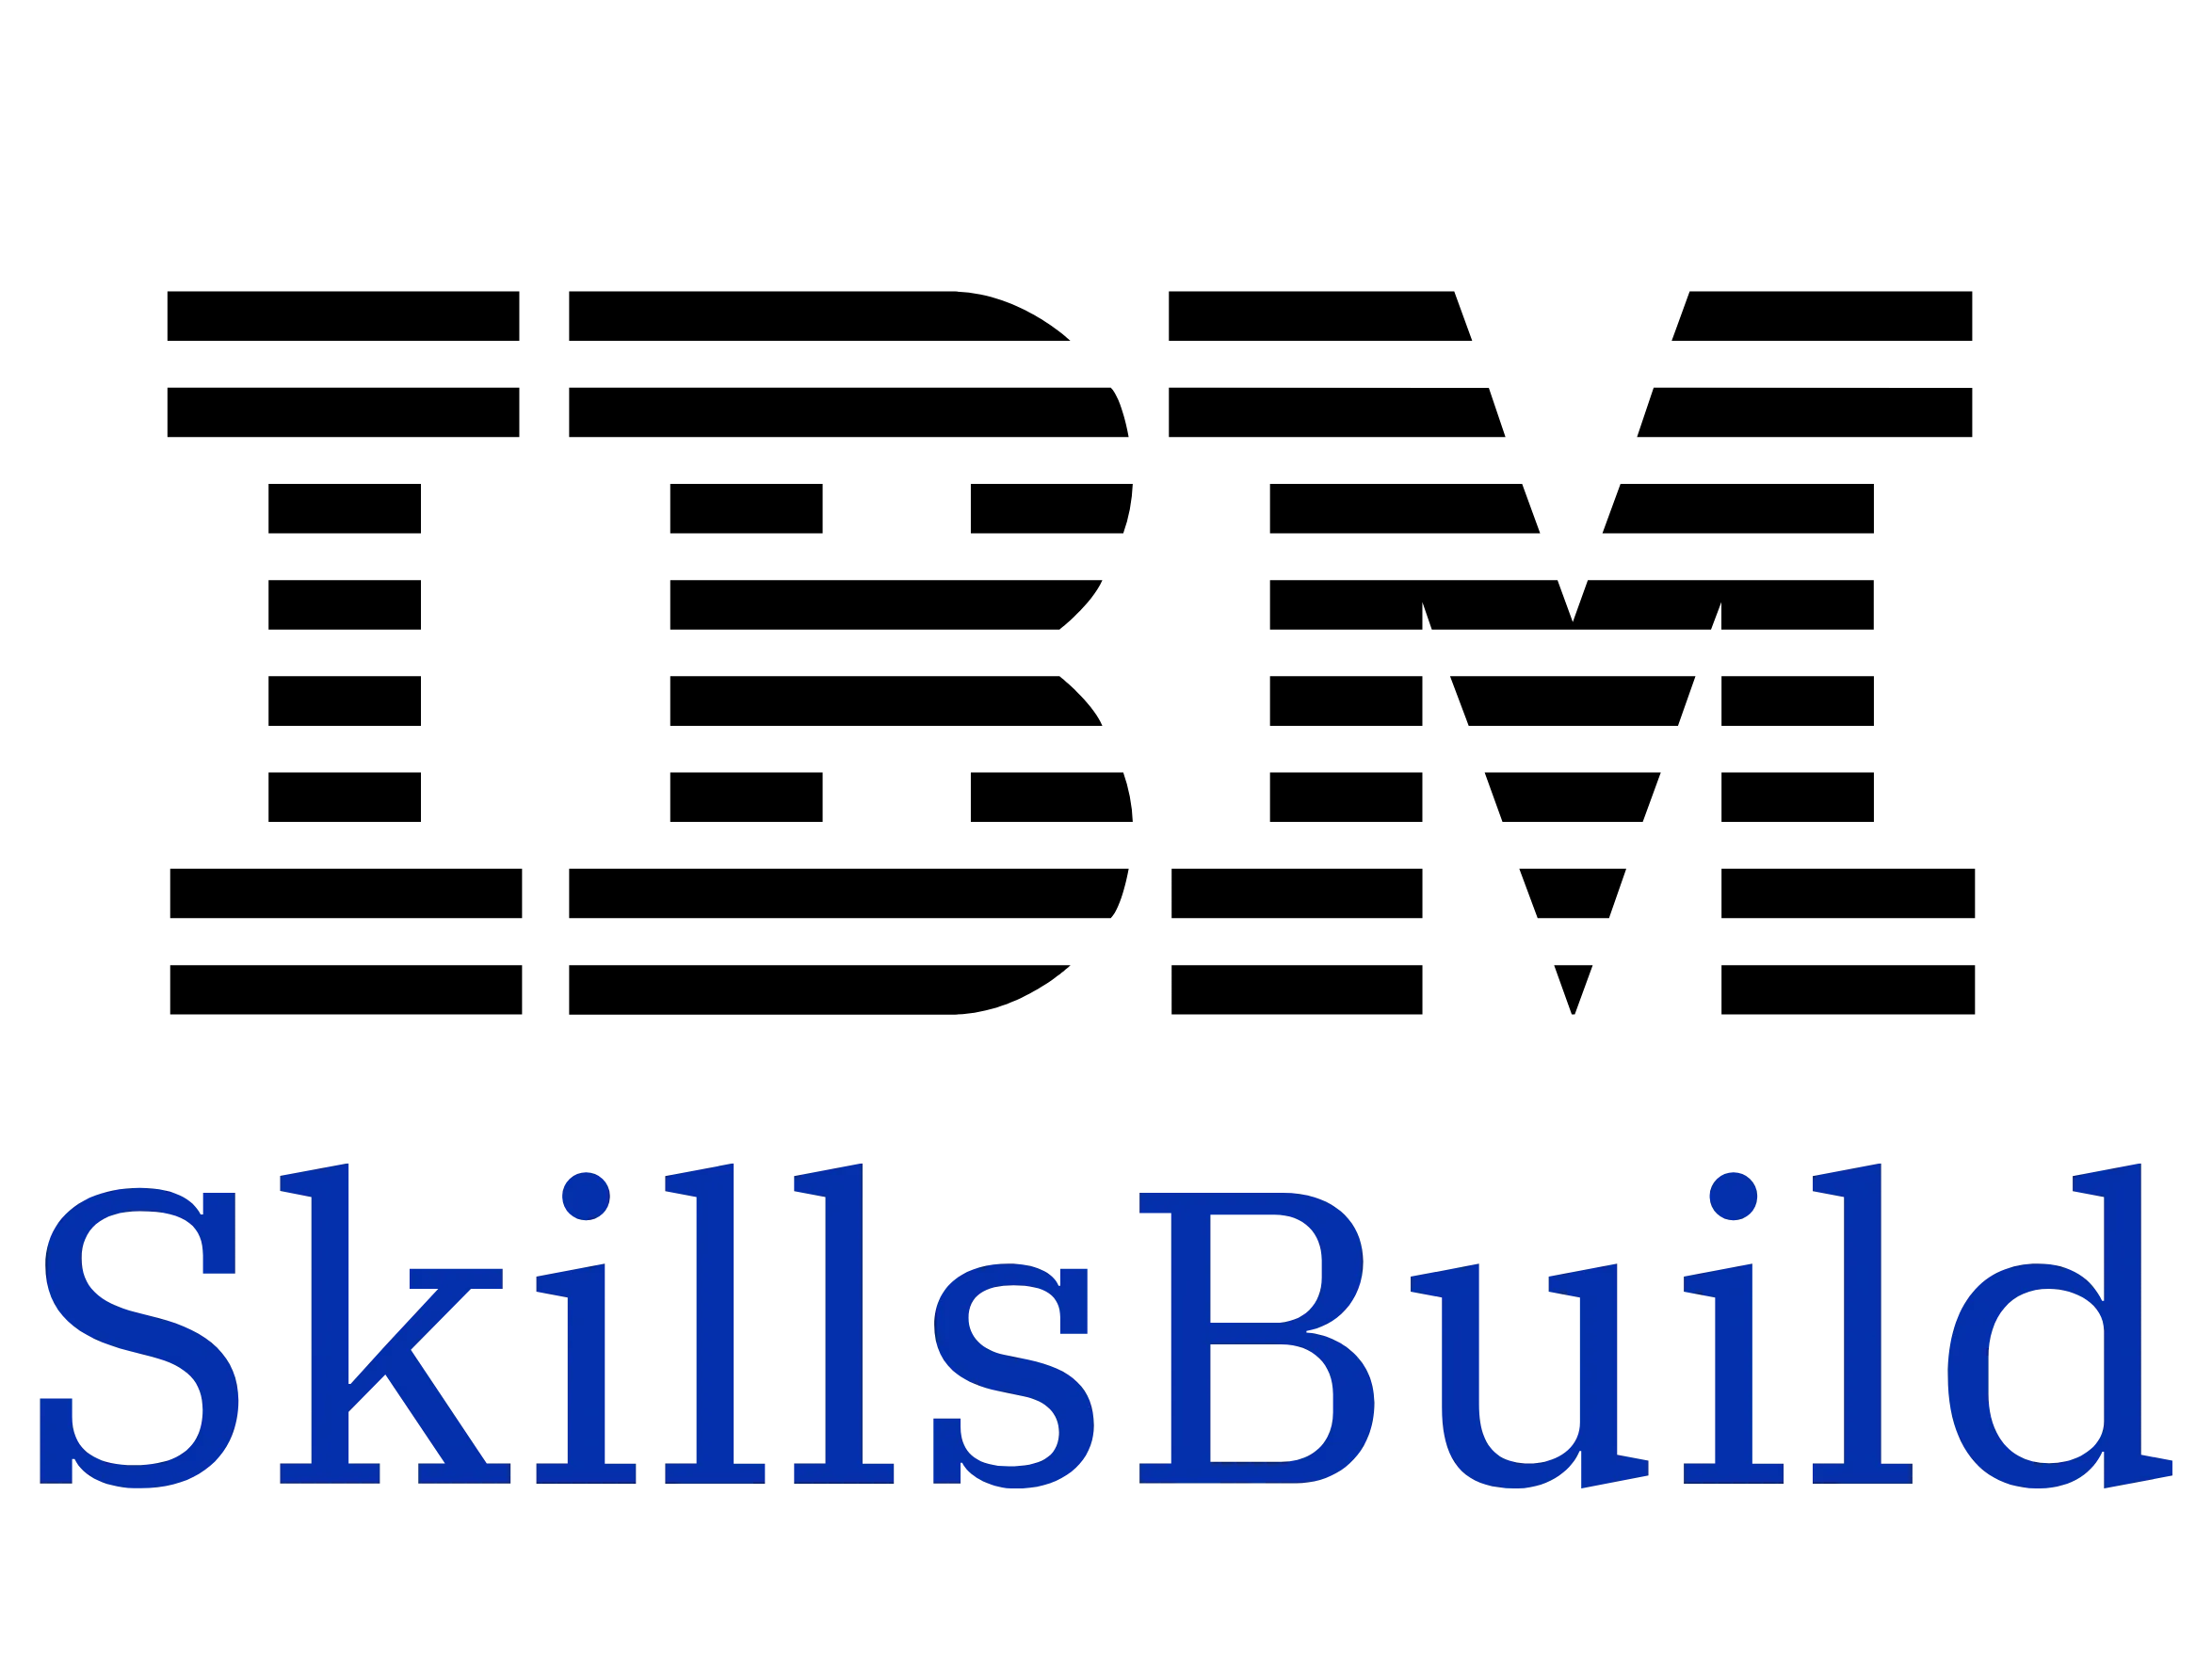 IBM Skills Build